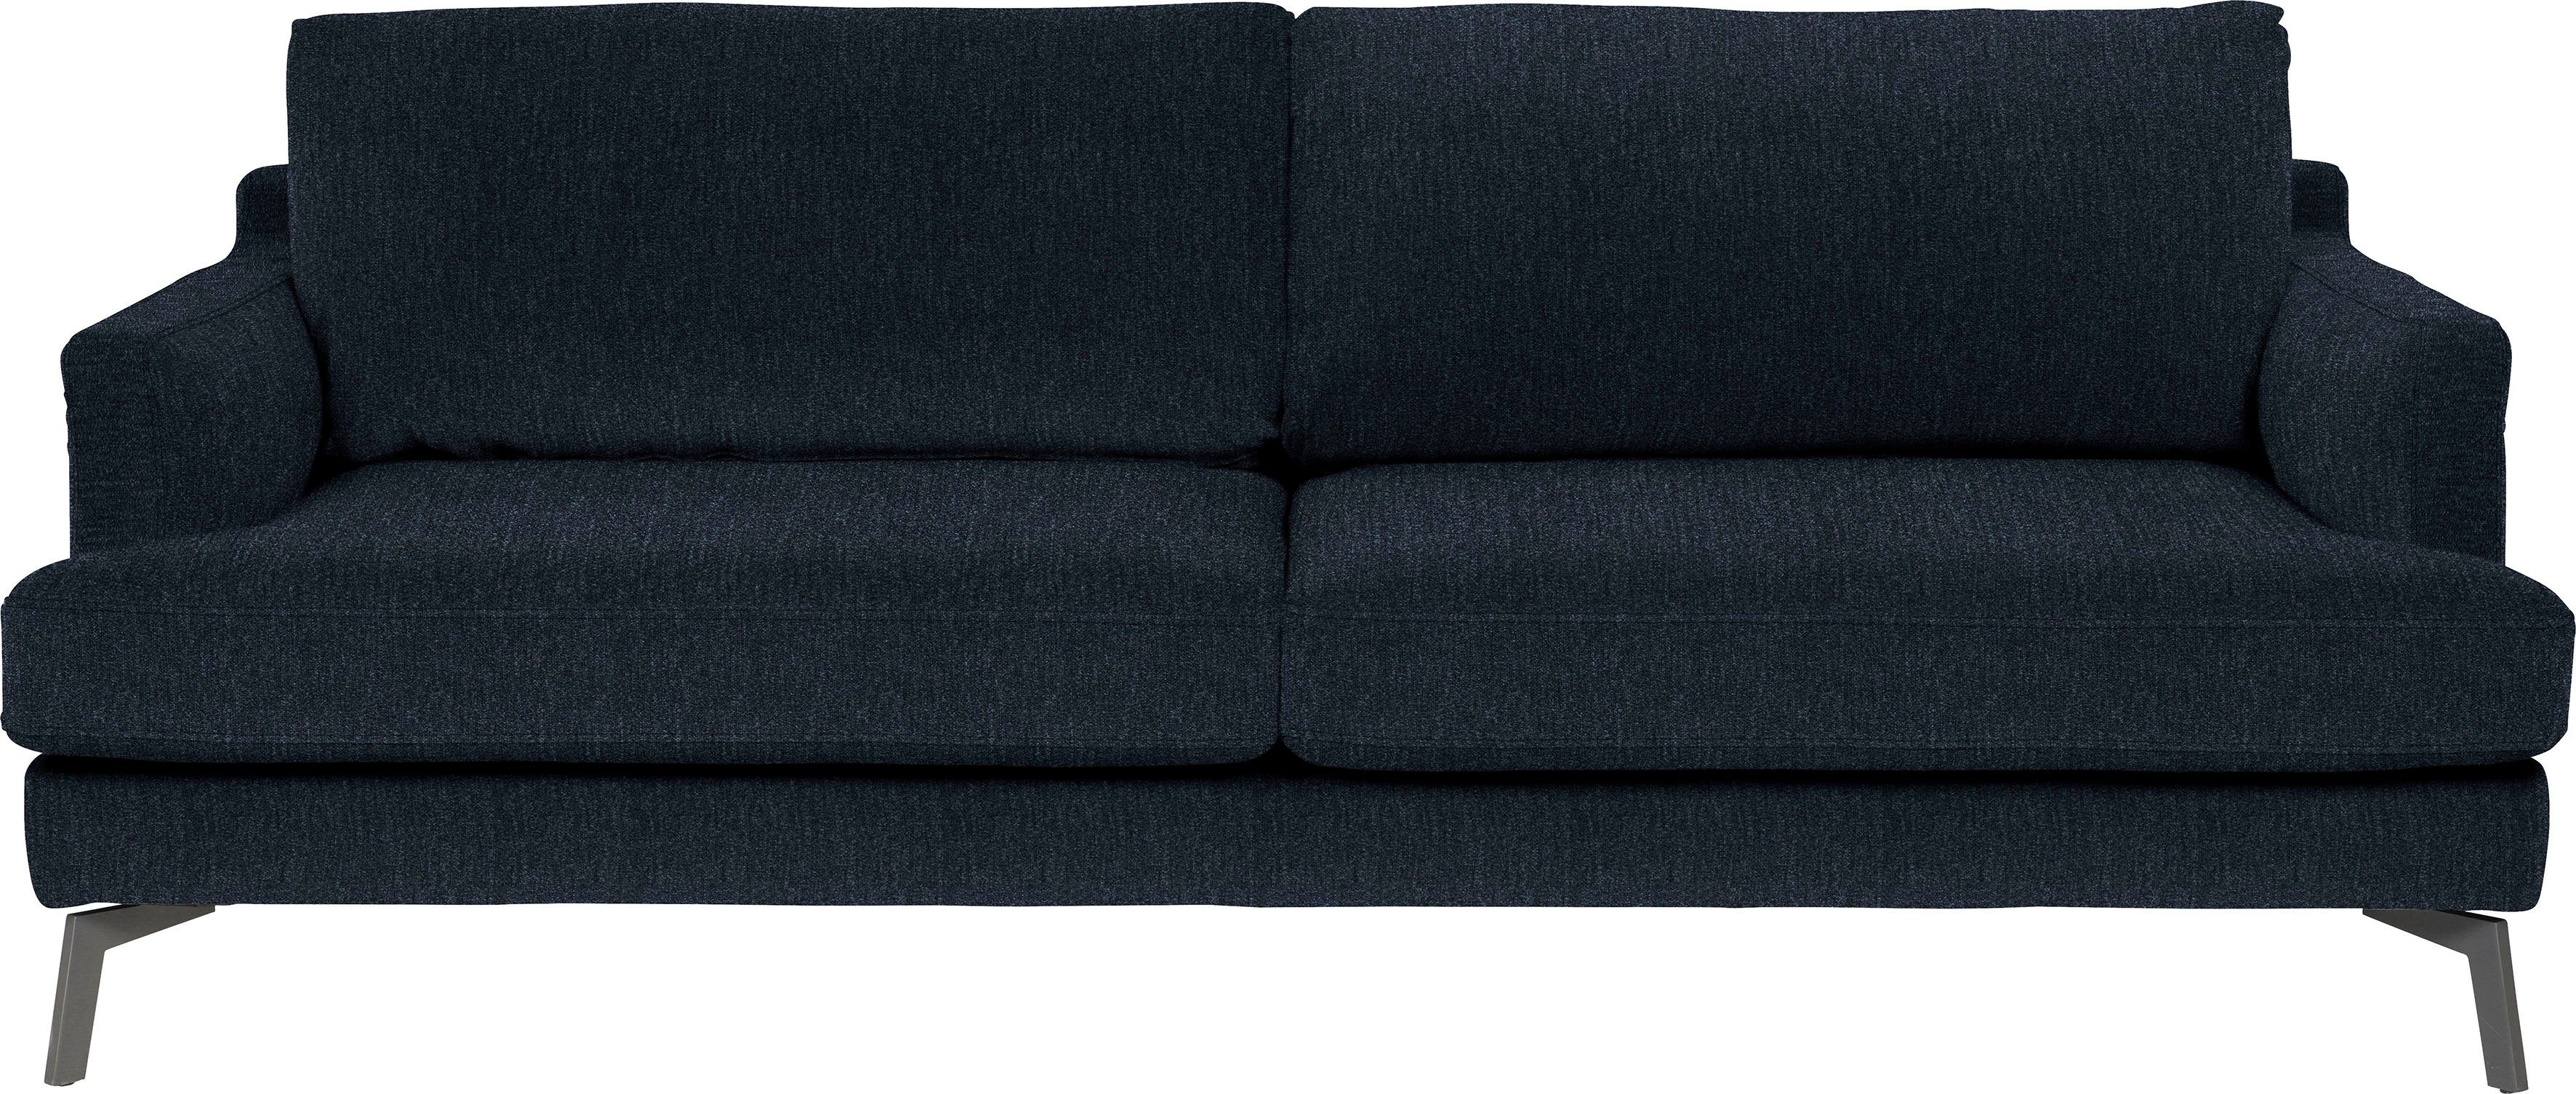 furninova 3-Sitzer Saga, ein Klassiker im skandinavischen Design midnight blu